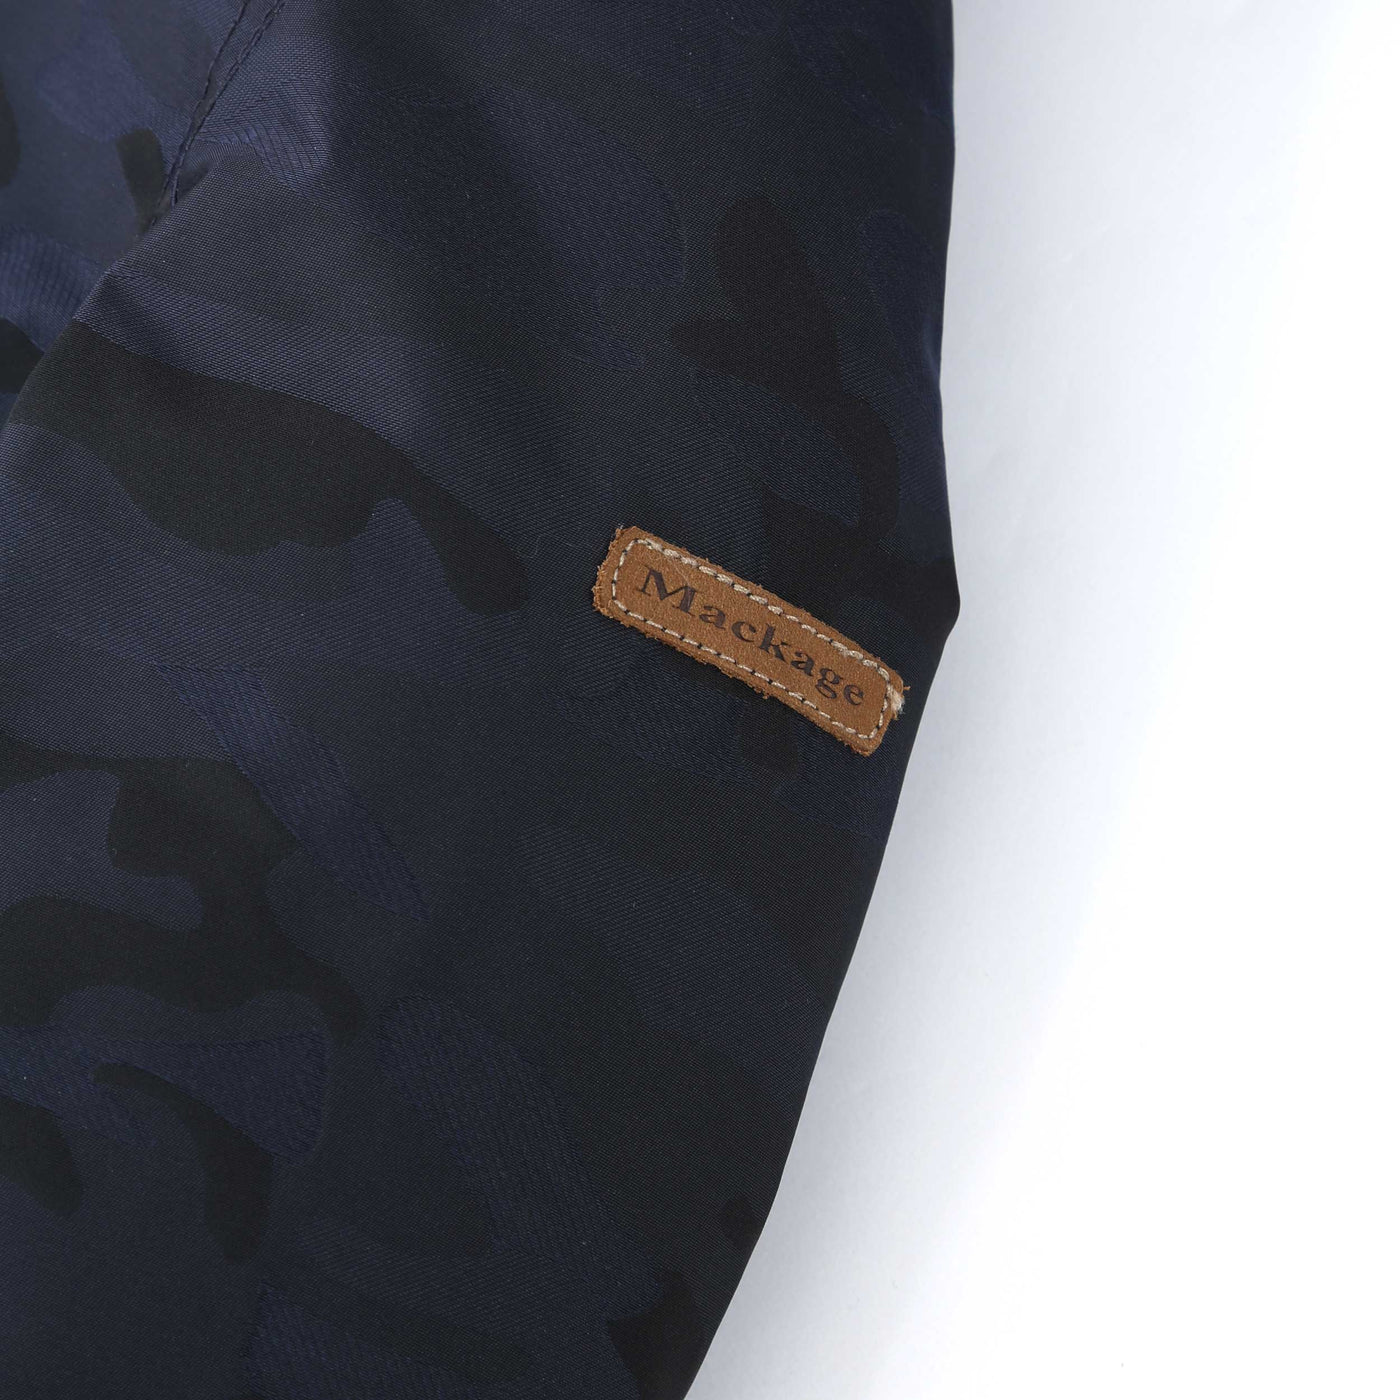 Mackage Lenny JT Kids Jacket in Navy Sleeve Logo